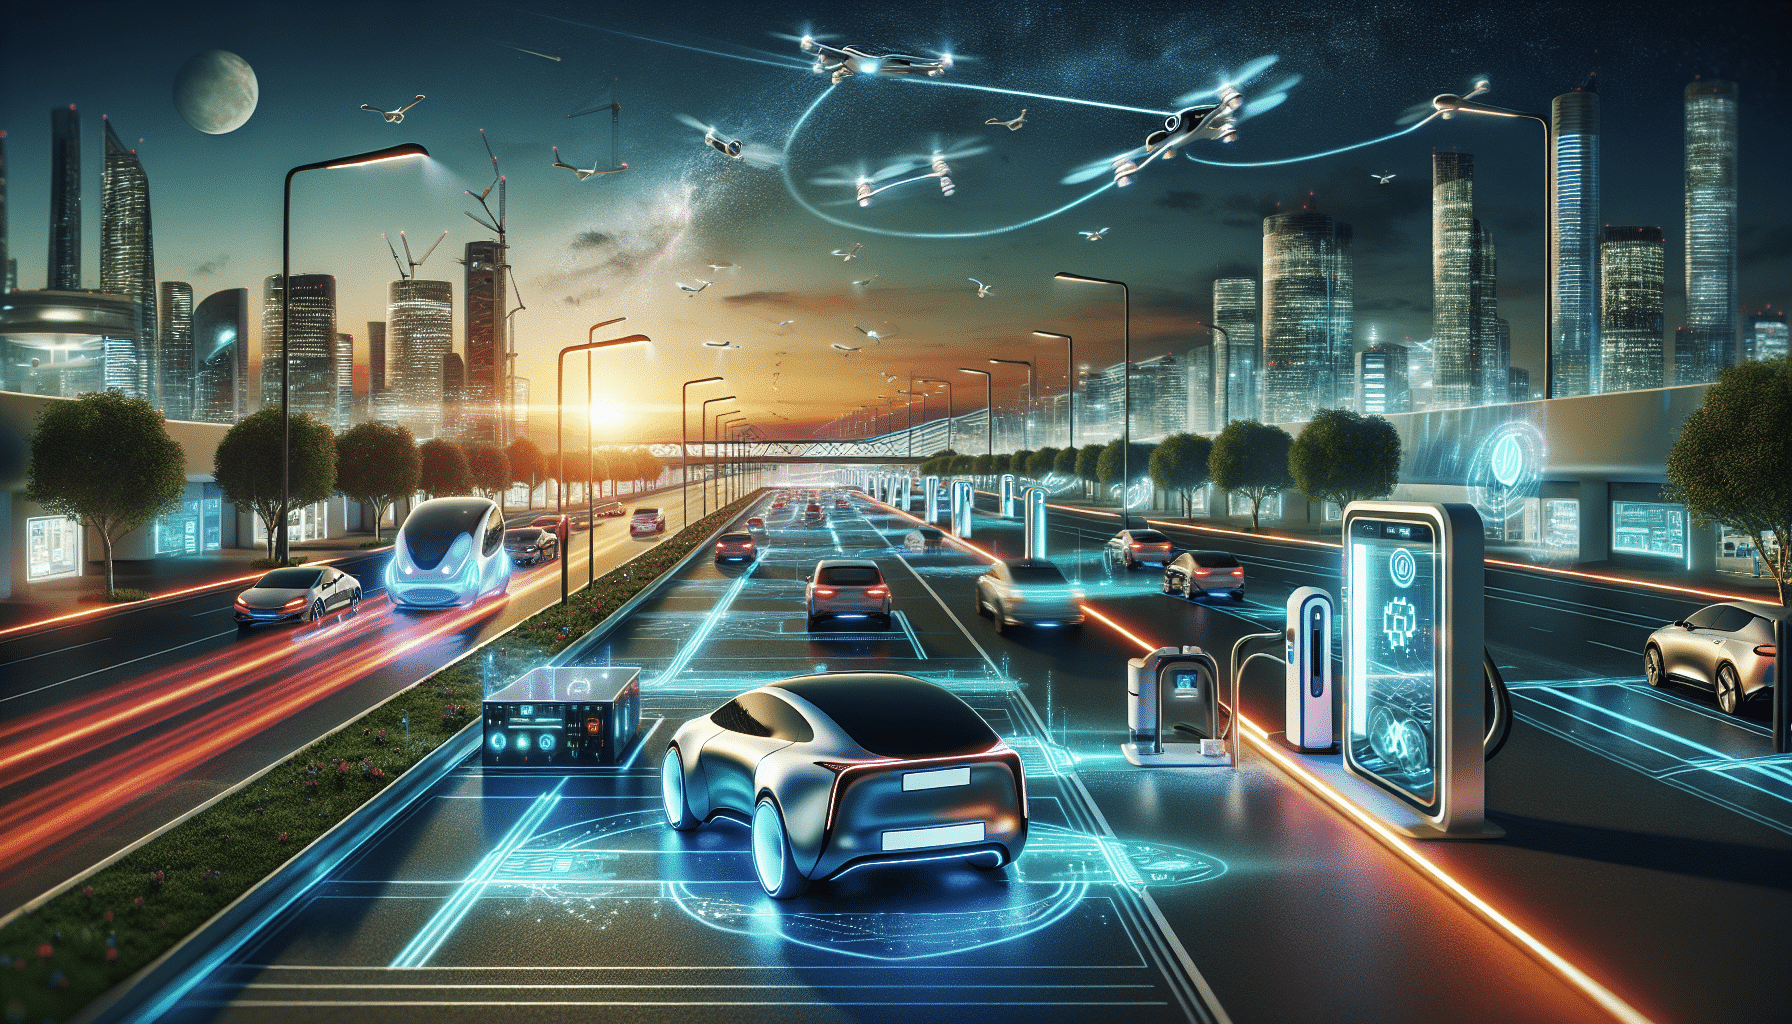 descubre las últimas novedades en tecnología automotriz con nuestra amplia gama de innovaciones en el mundo del automóvil.